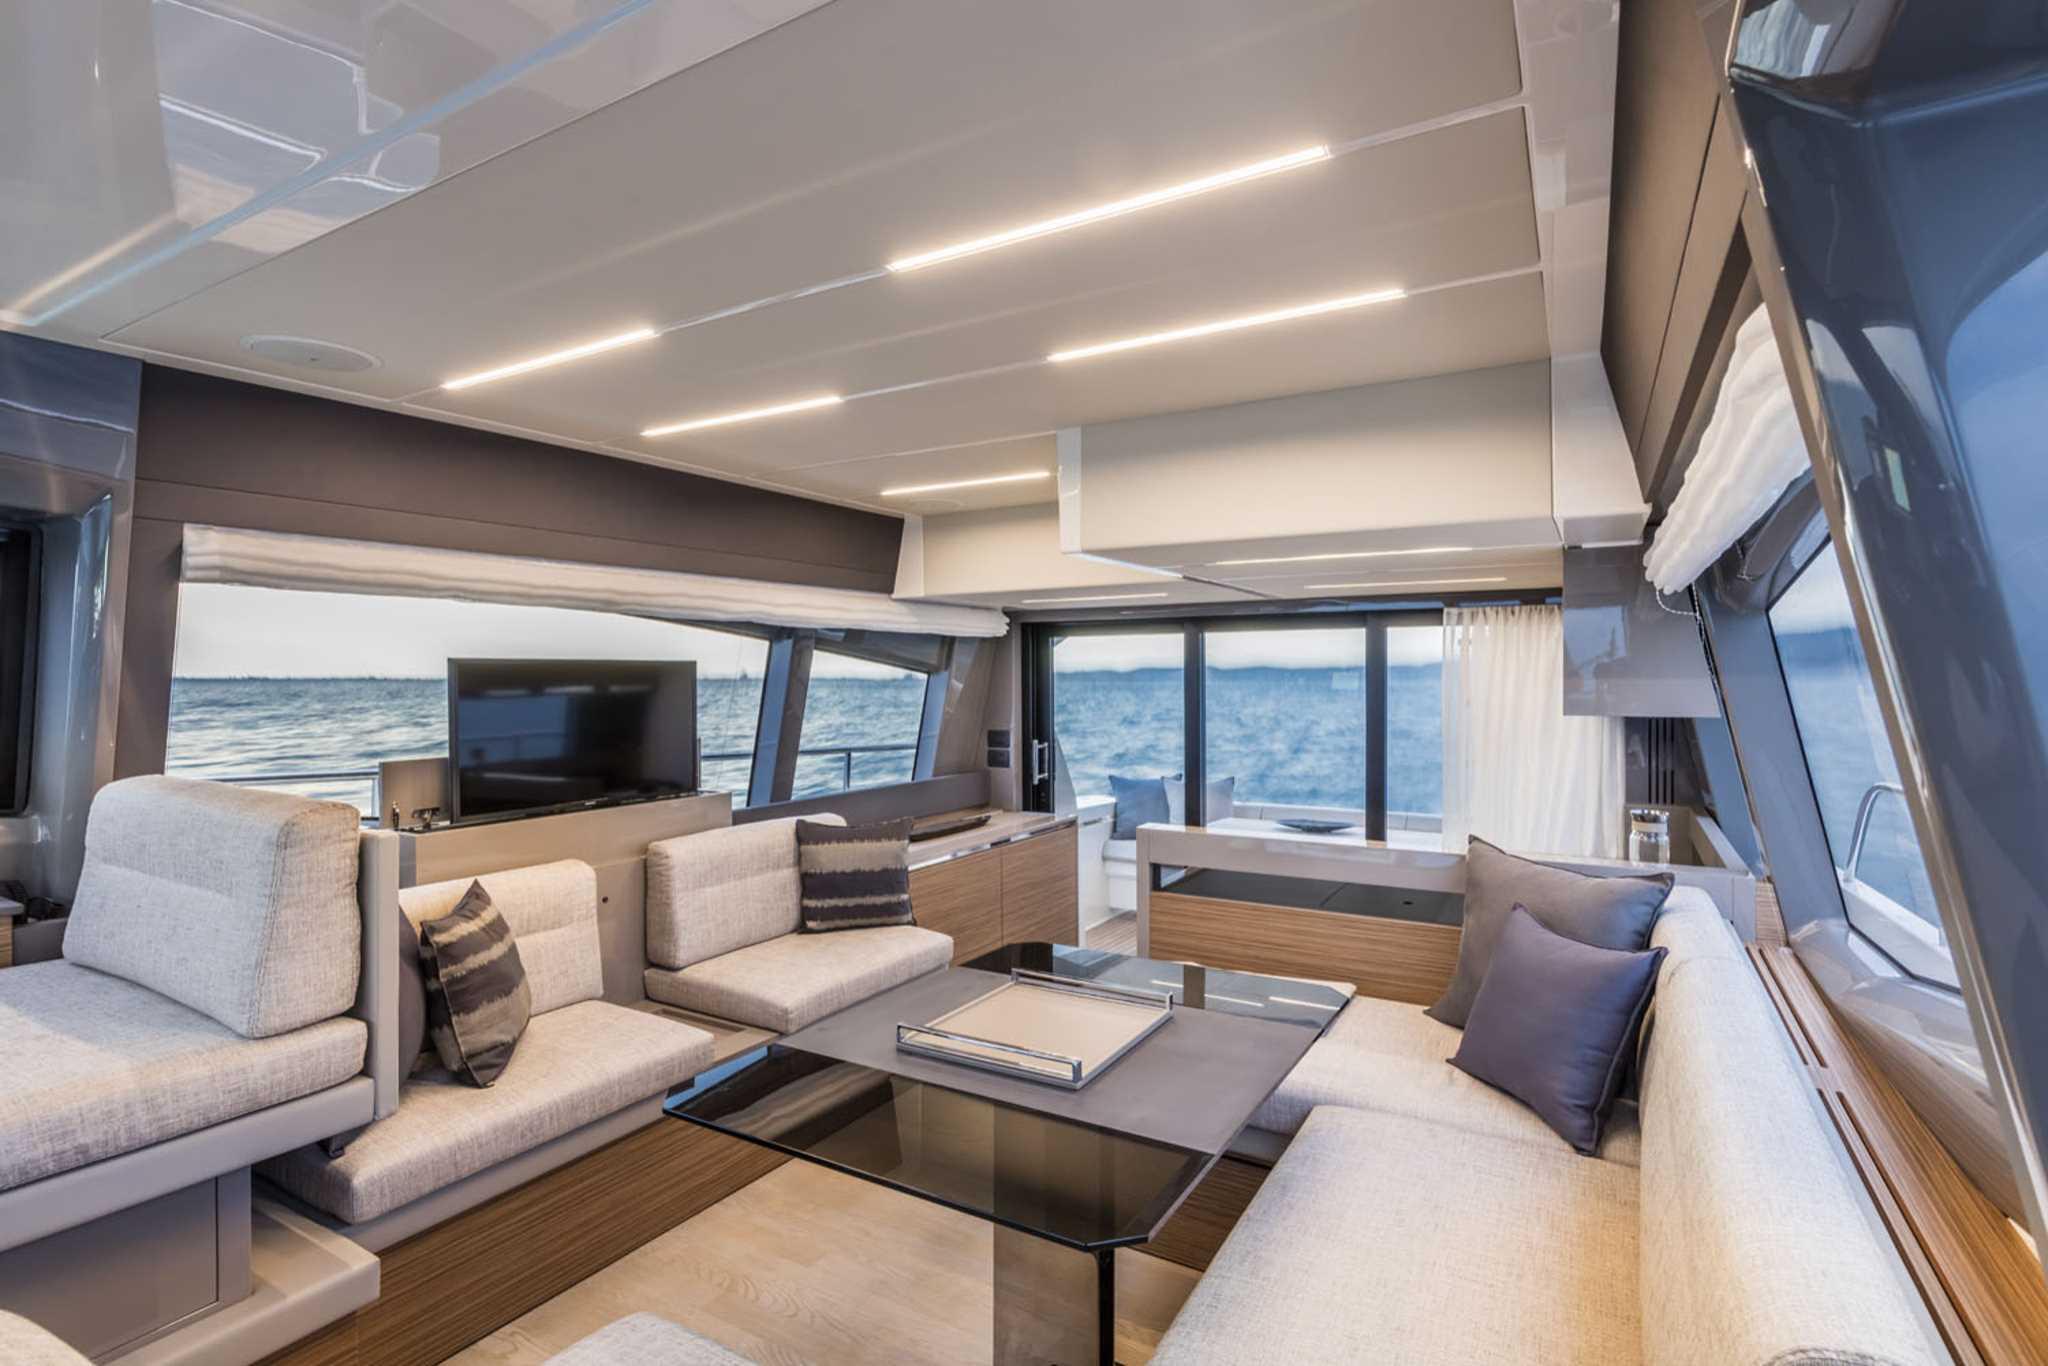 2017 Ferretti Yachts 450